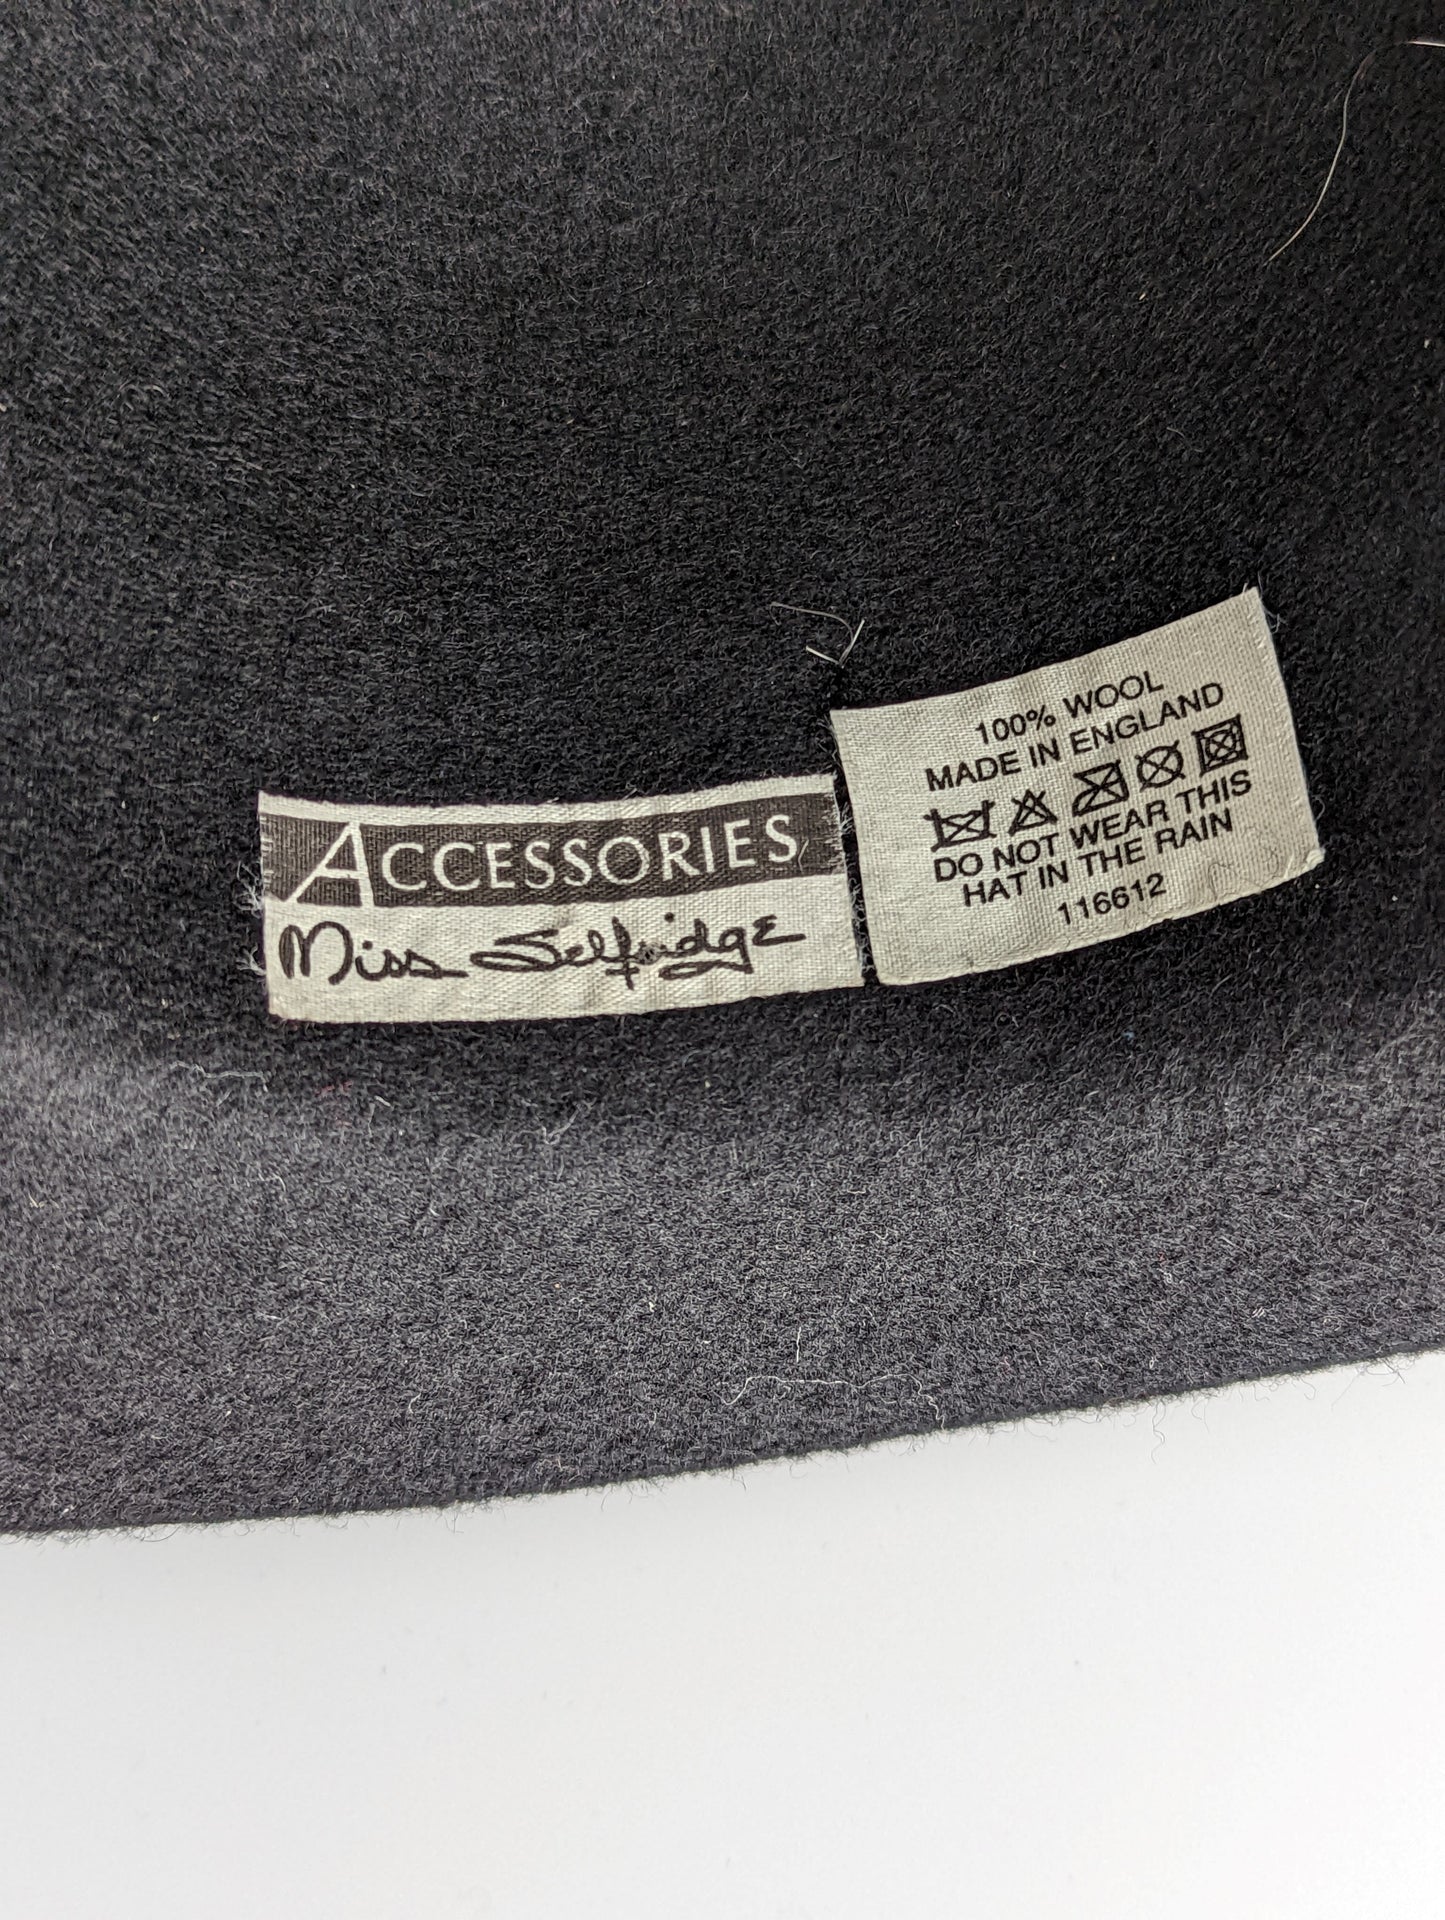 Miss Selfridge Accessories Black Wool Ladies Hat